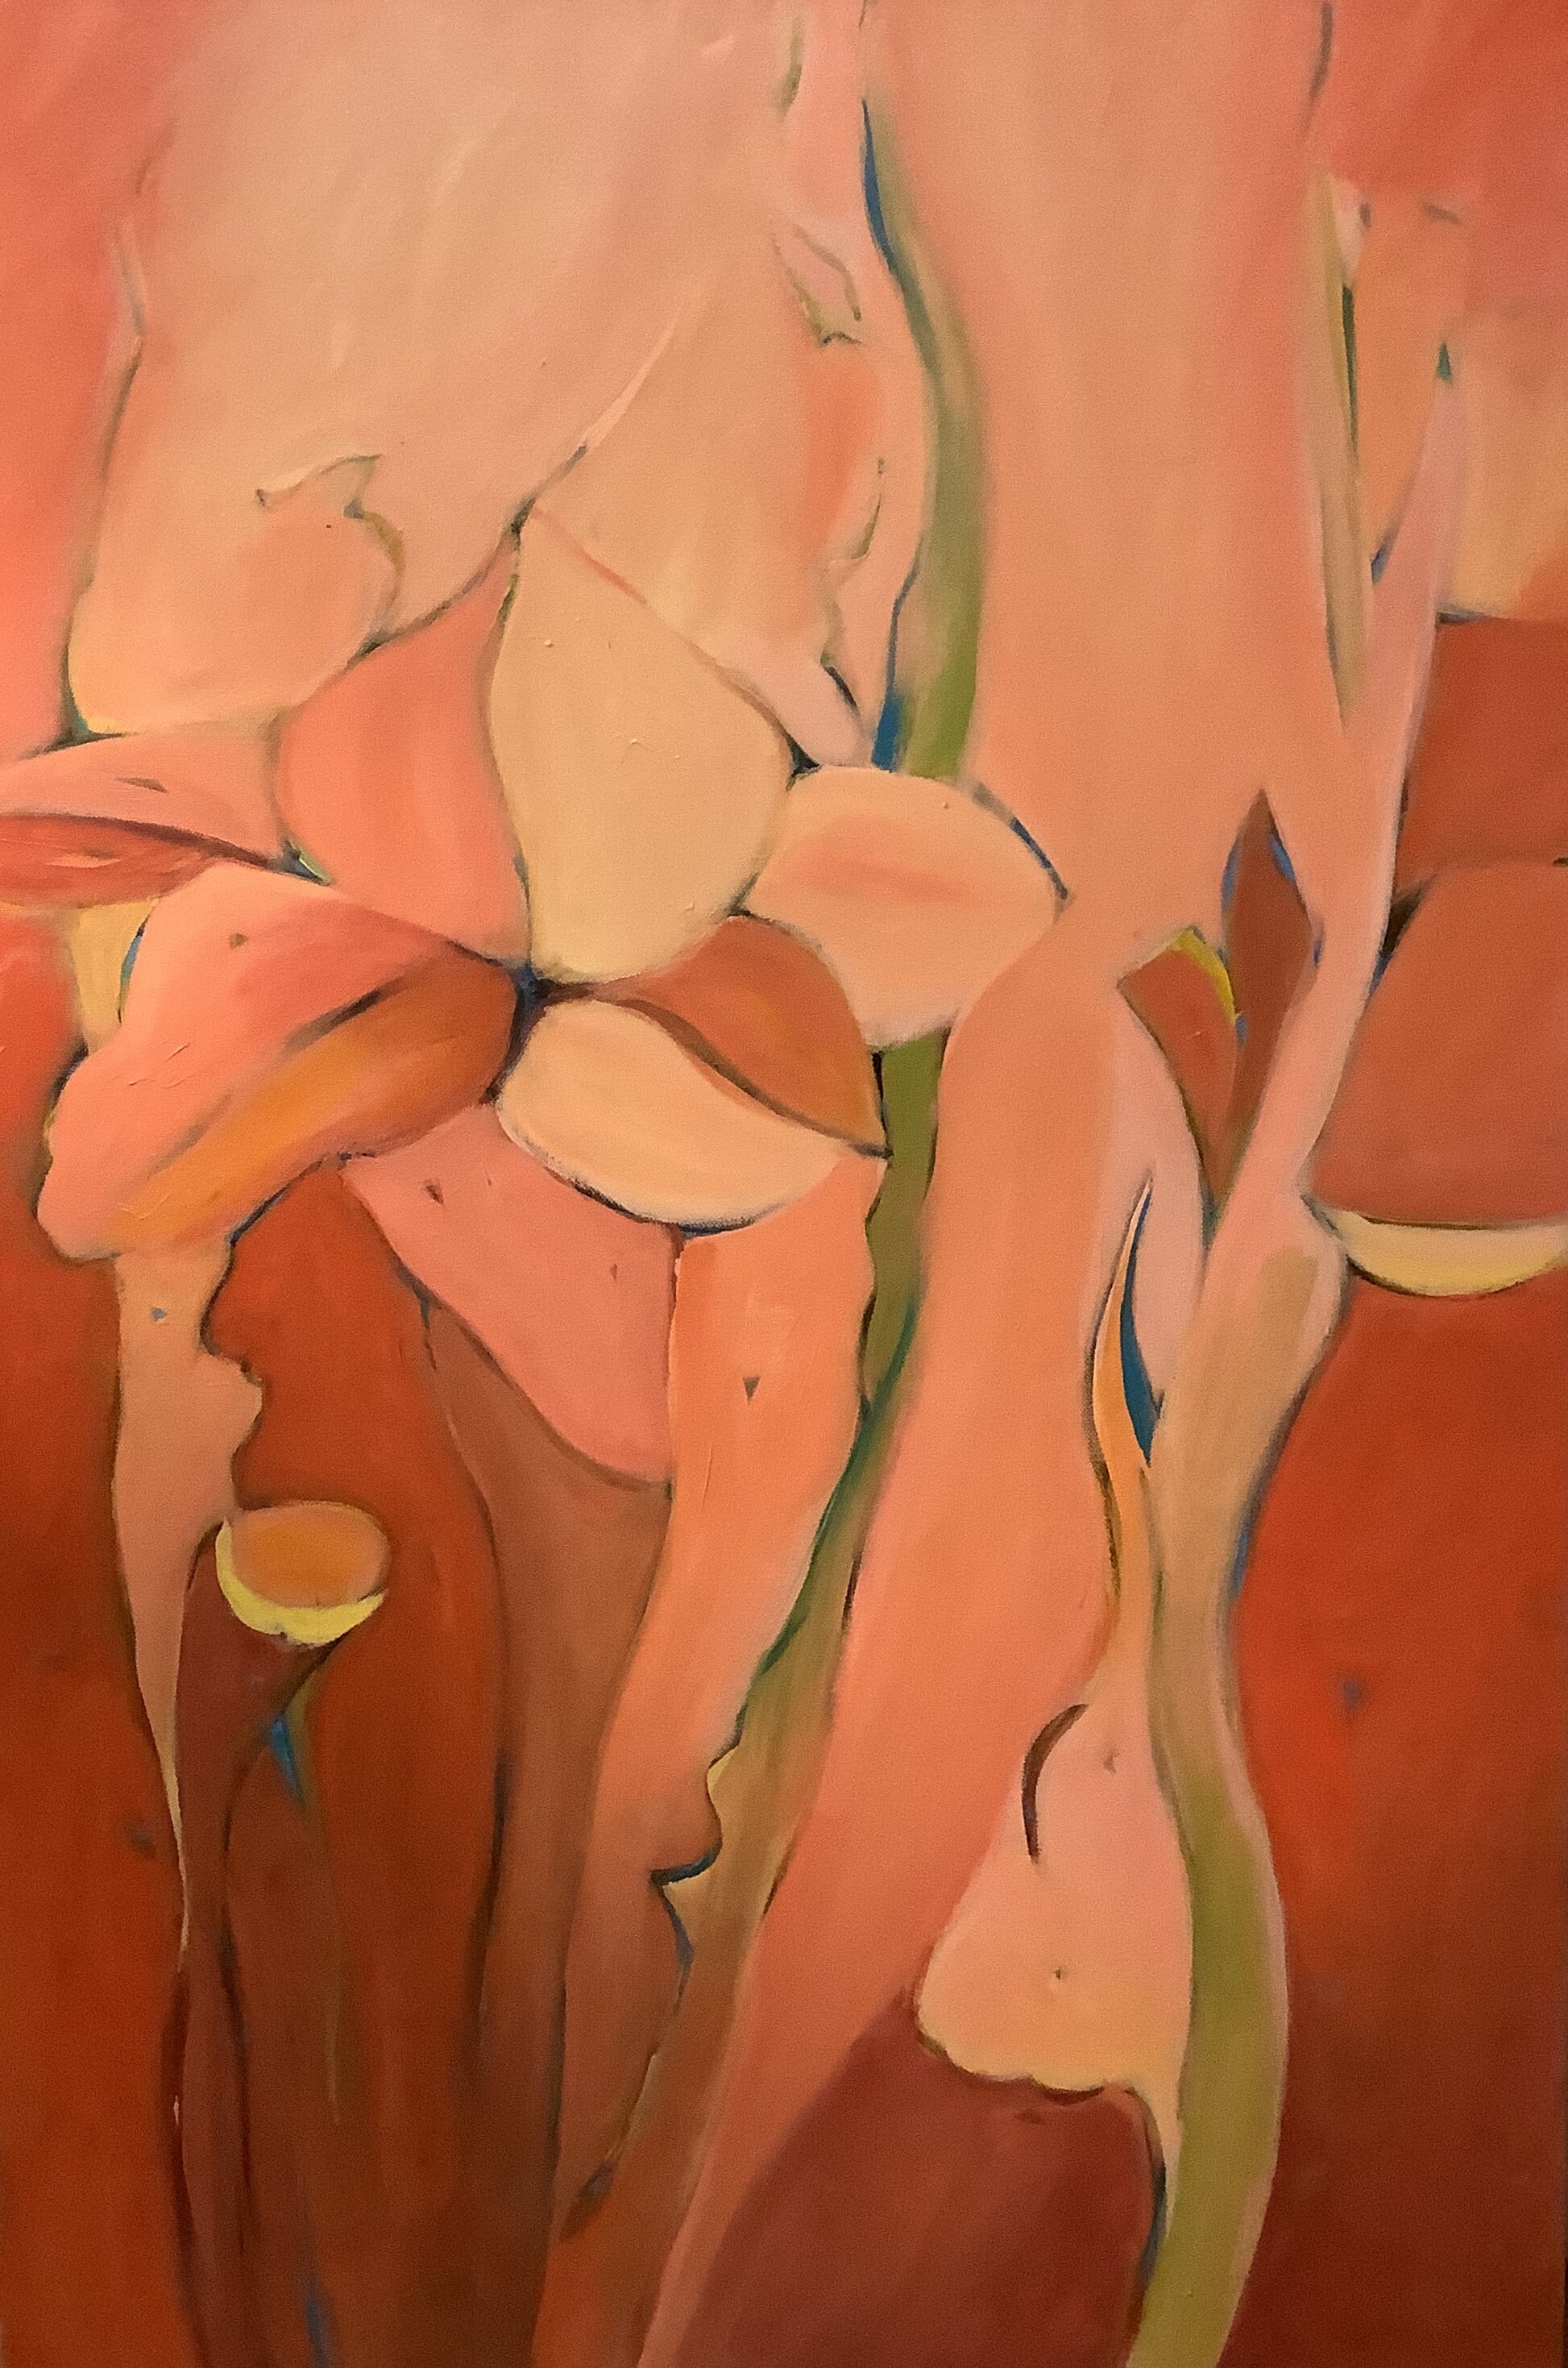 Desert Love, 34"x30", acrylic on canvas, 2019